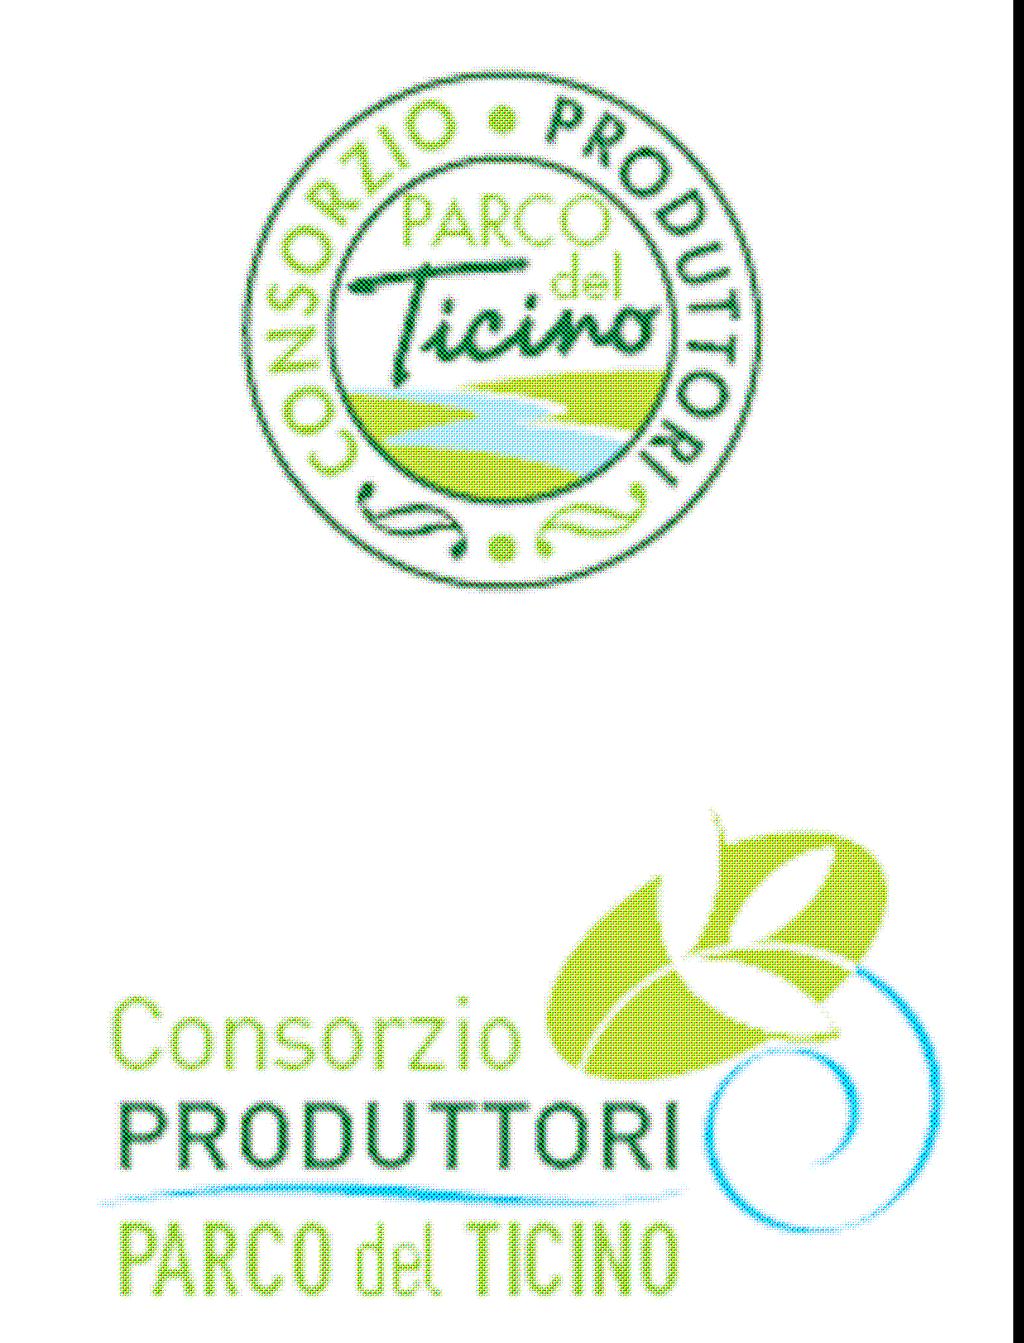 A Marchio Parco Ticino Produzione Controllata.